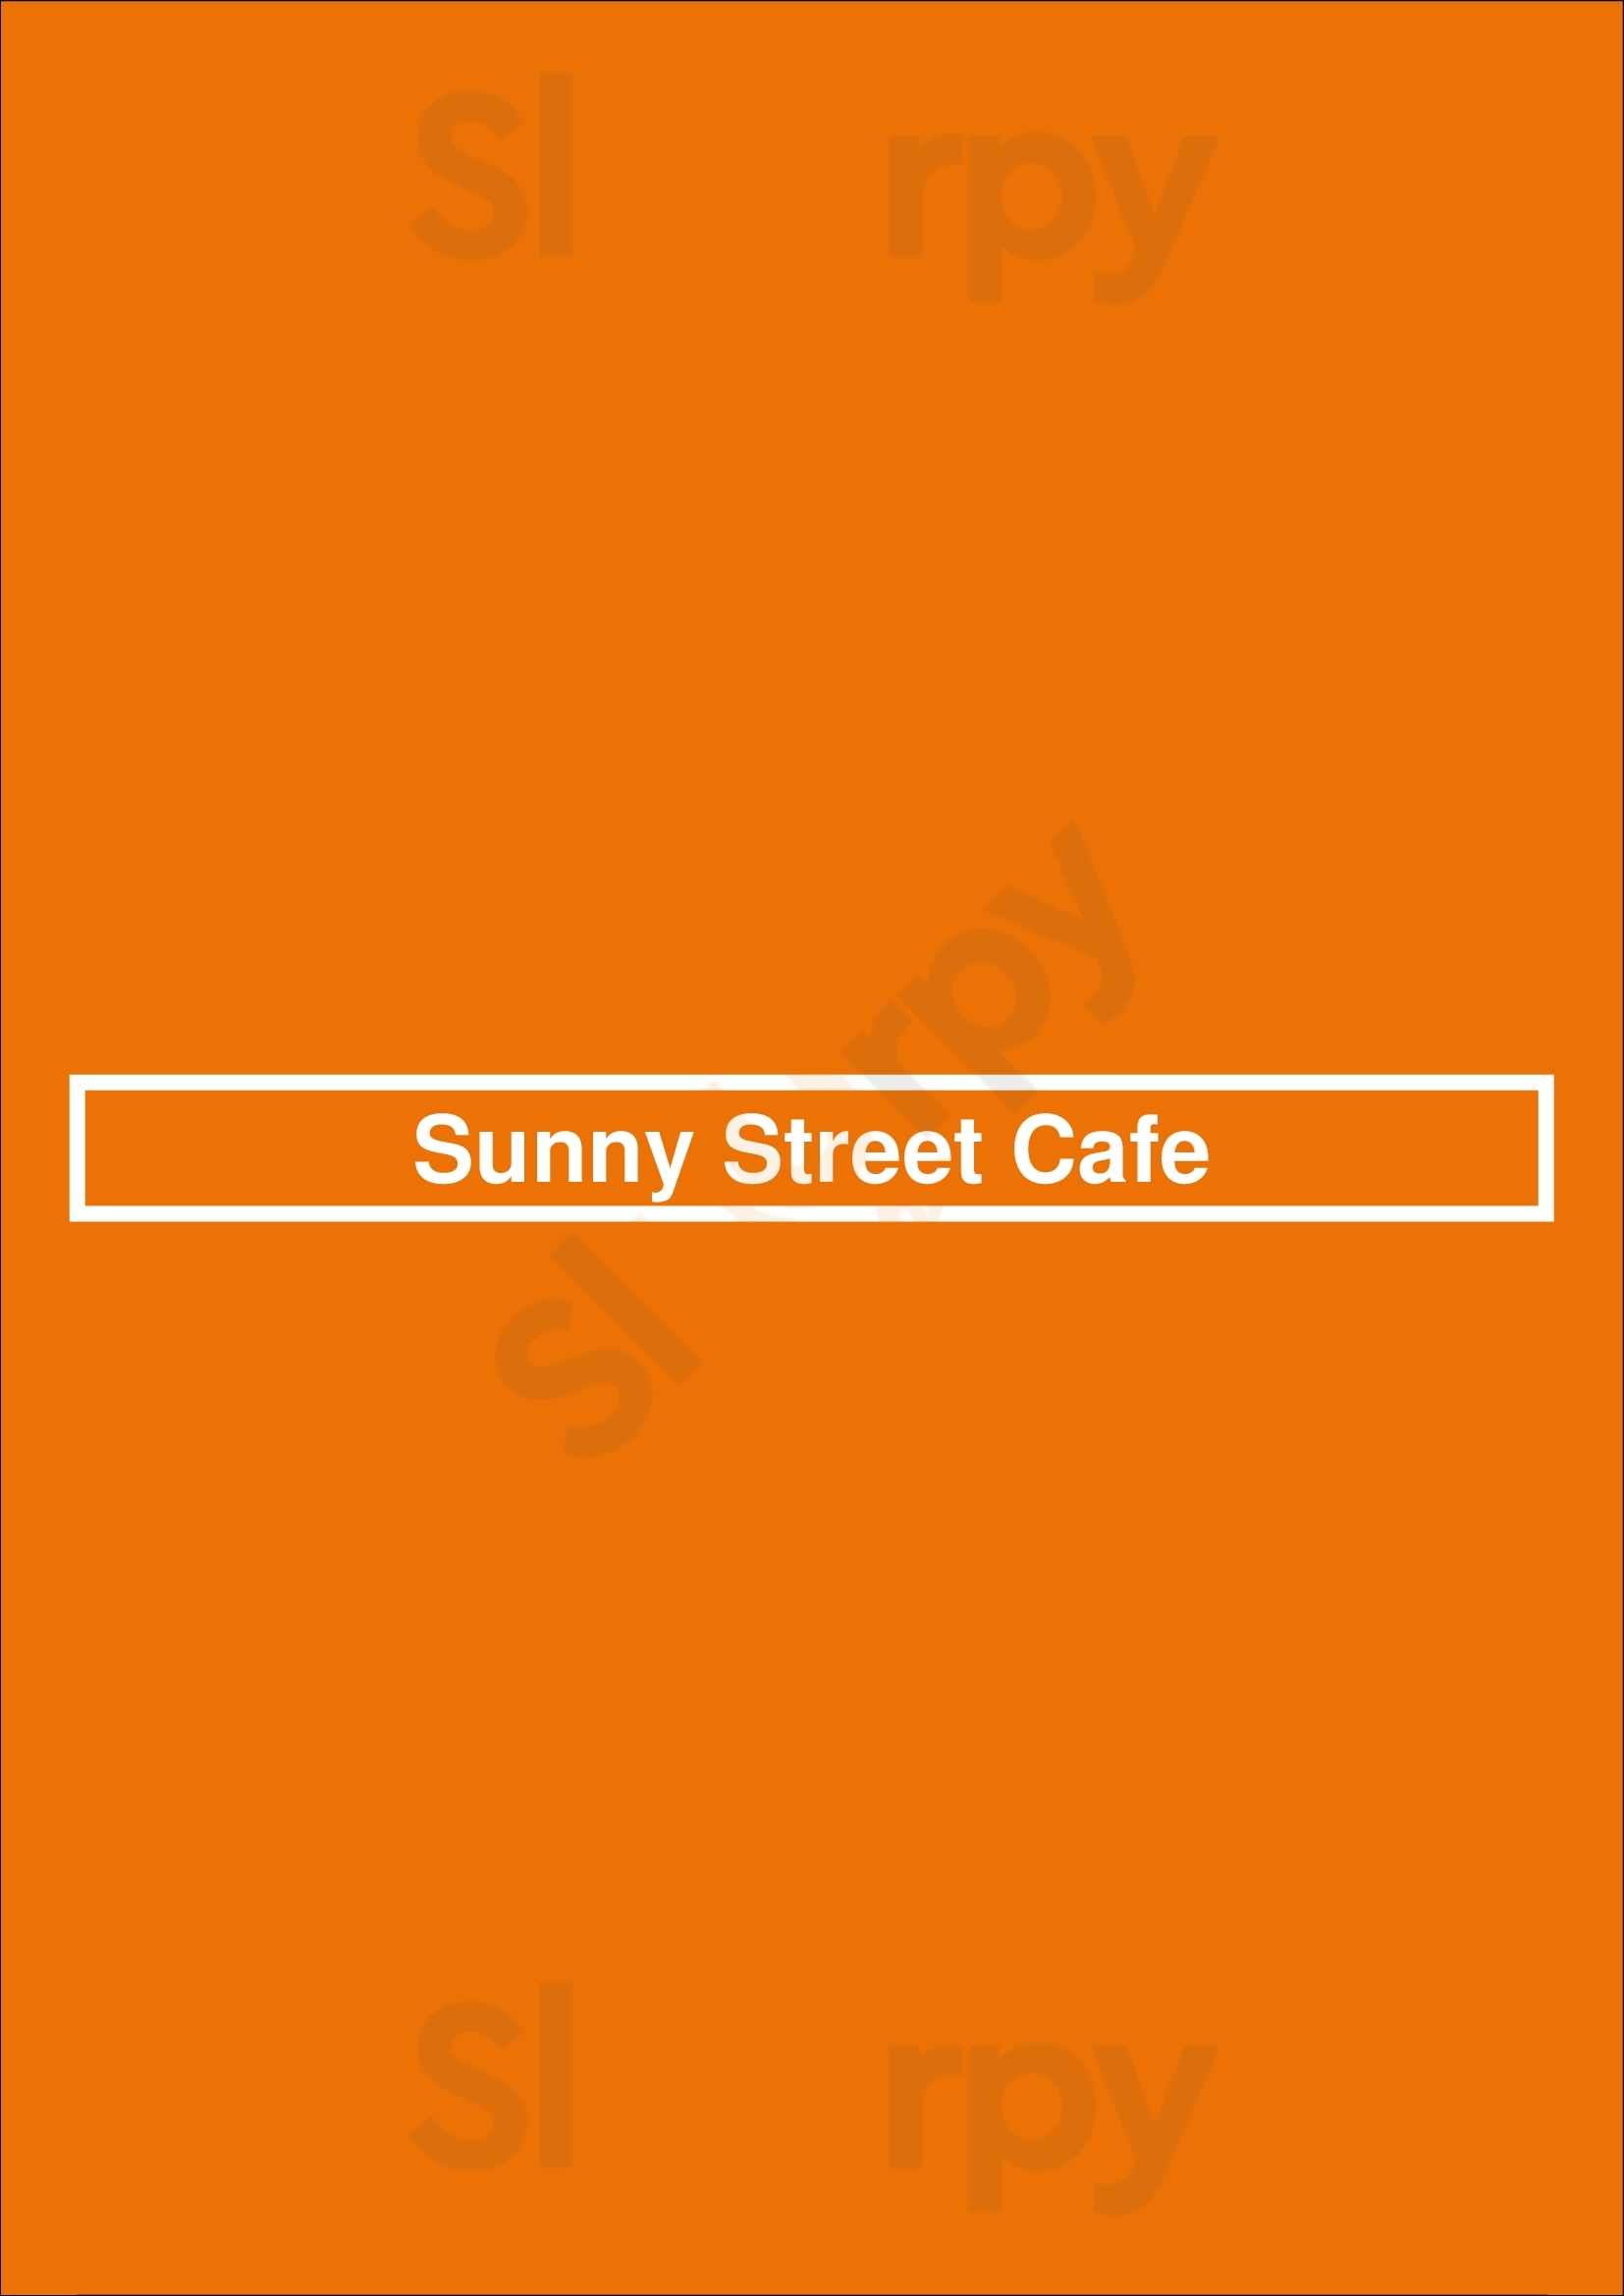 Sunny Street Cafe Columbus Menu - 1